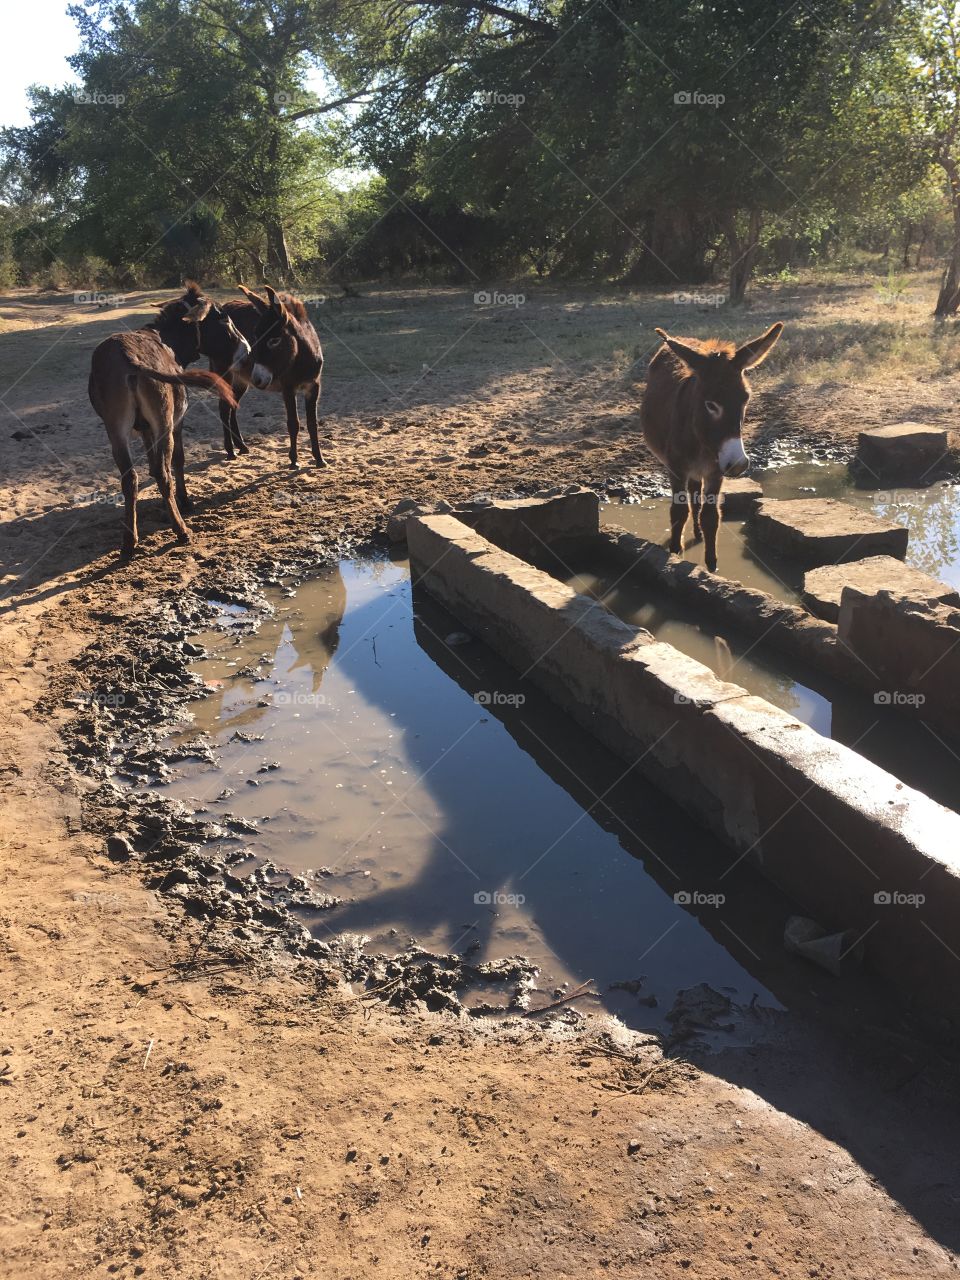 Donkeys by the broken water pump